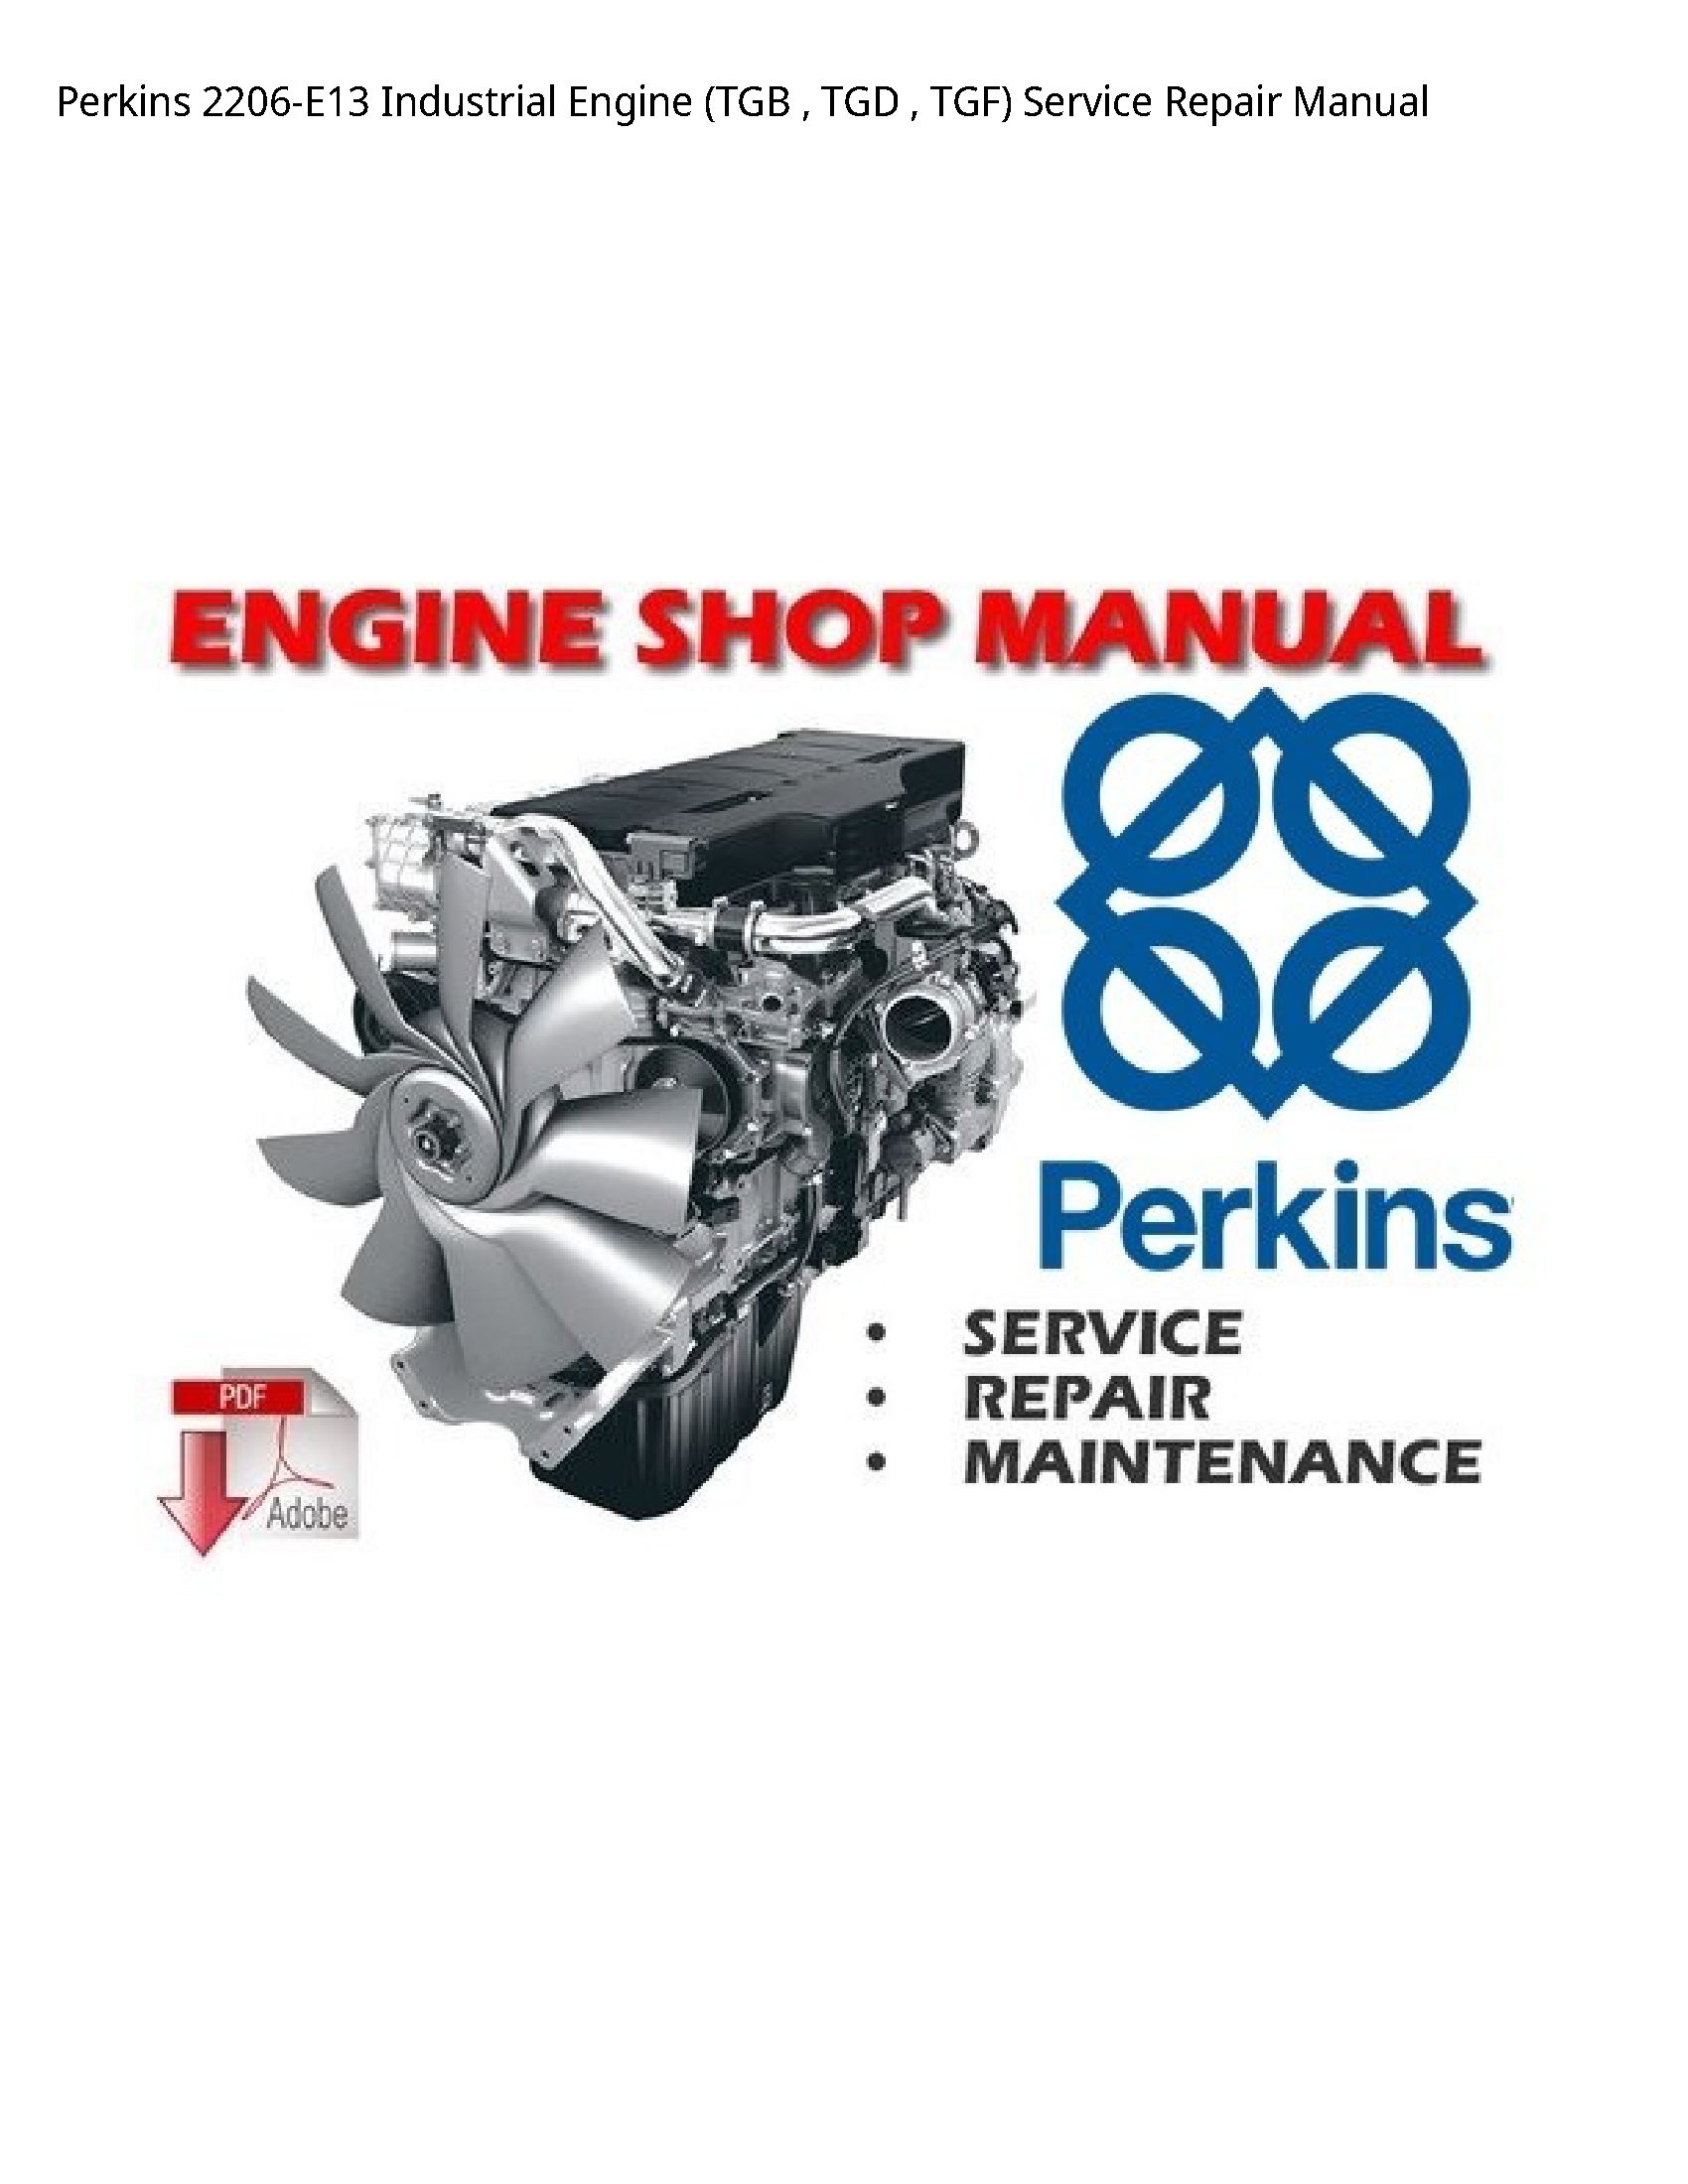 Perkins 2206-E13 Industrial Engine (TGB TGD TGF) manual